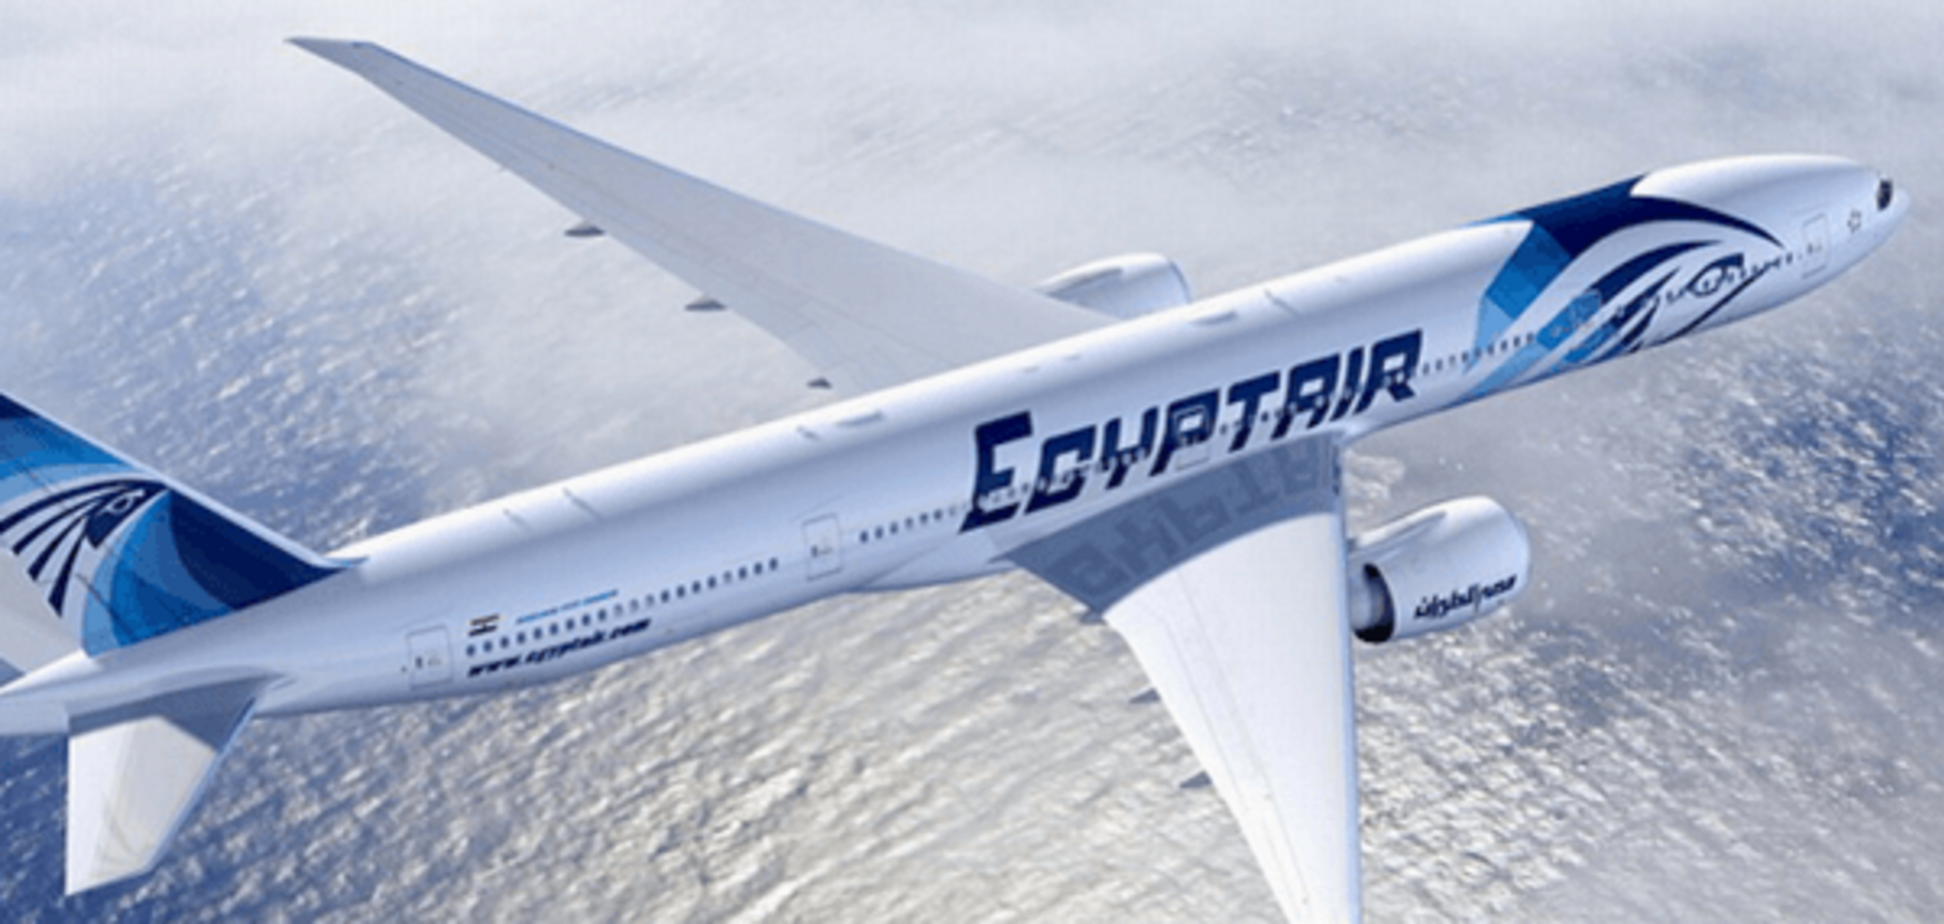 Стало известно, кто находился на борту пропавшего самолета EgyptAir